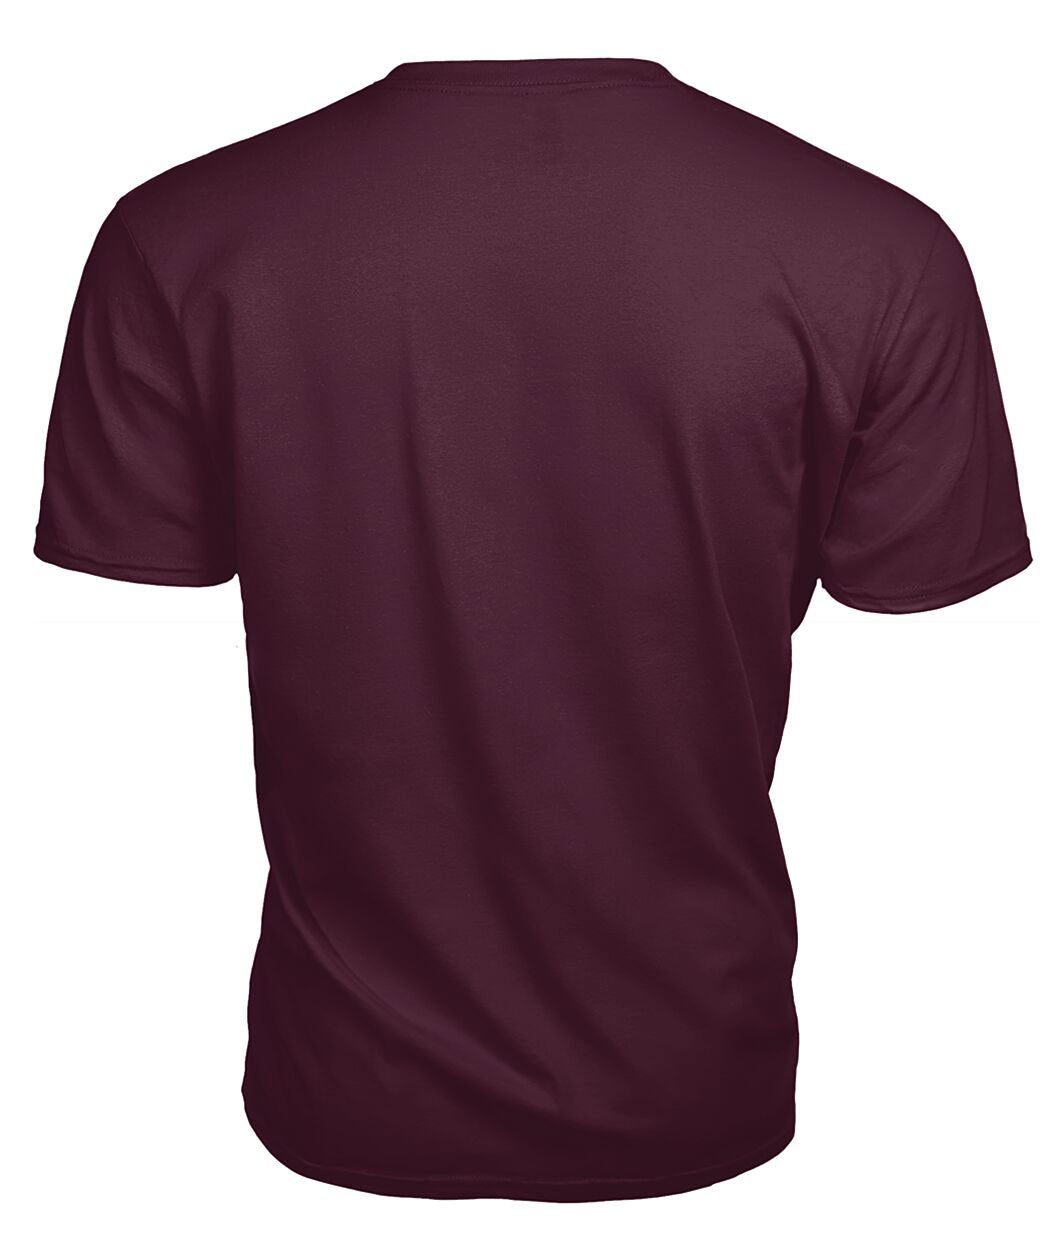 Broun Modern Tartan Crest 2D T-shirt - Blood Runs Through My Veins Style